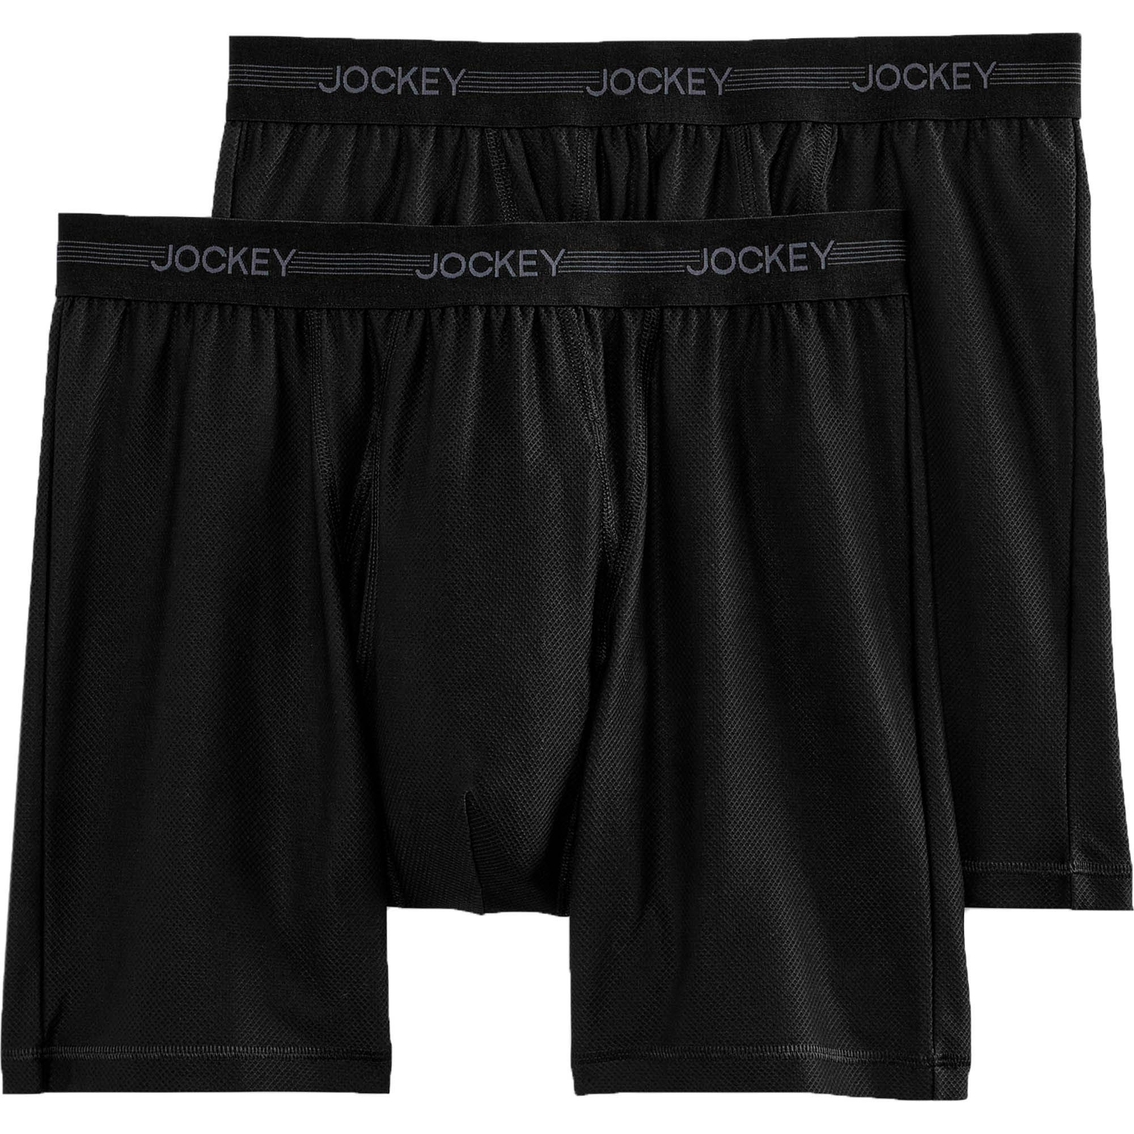 Jockey Ultimate Freedom Long Leg Boxer Briefs 2 Pk. | Underwear ...